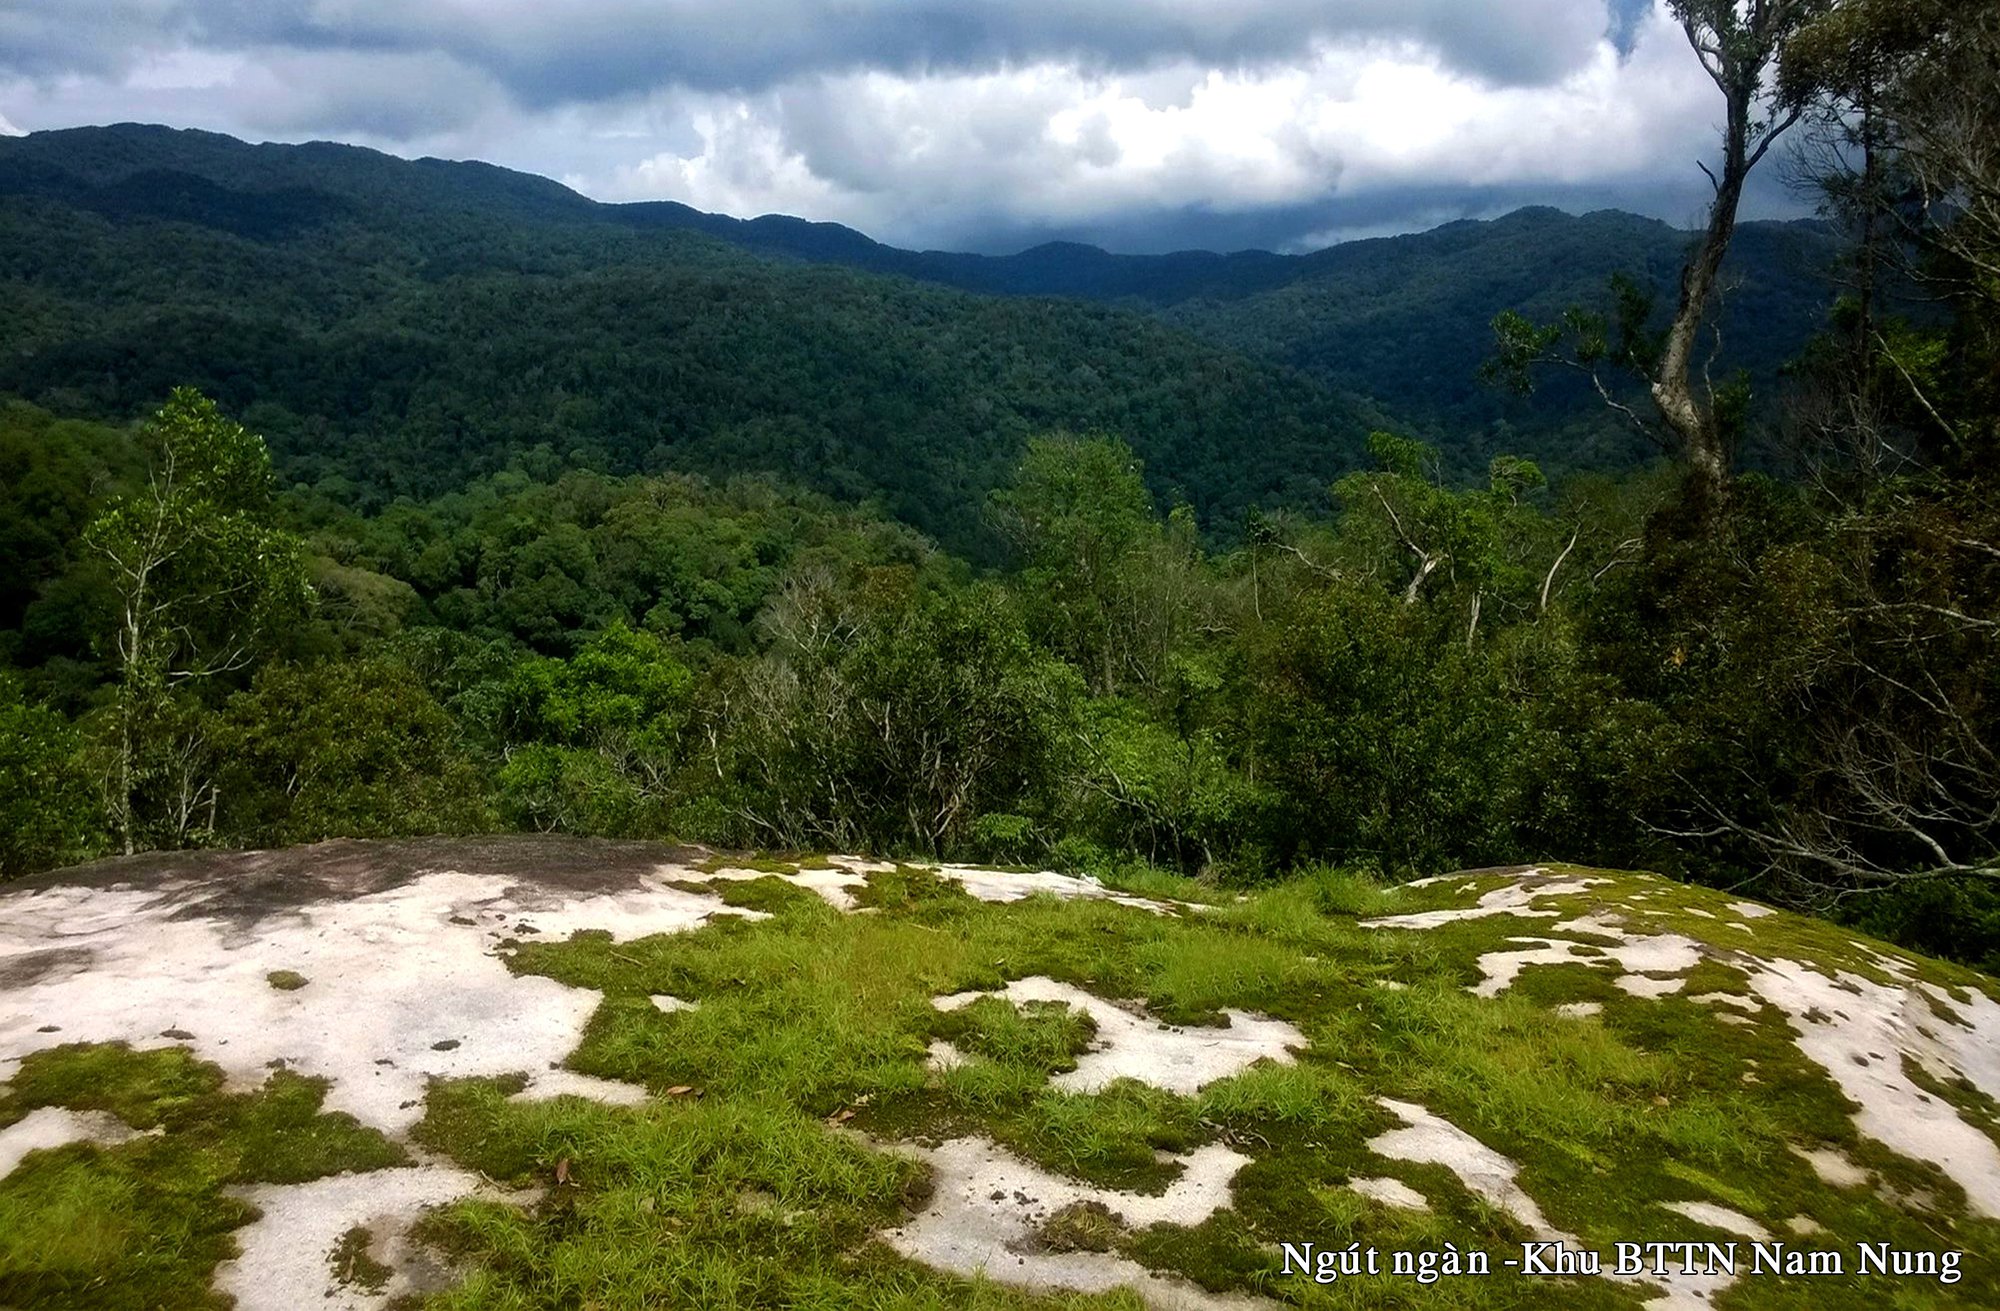 Khu bảo tồn thiên nhiên Nam Nung: “Kích hoạt” tiềm năng du lịch sinh thái trong môi trường rừng - Ảnh 2.